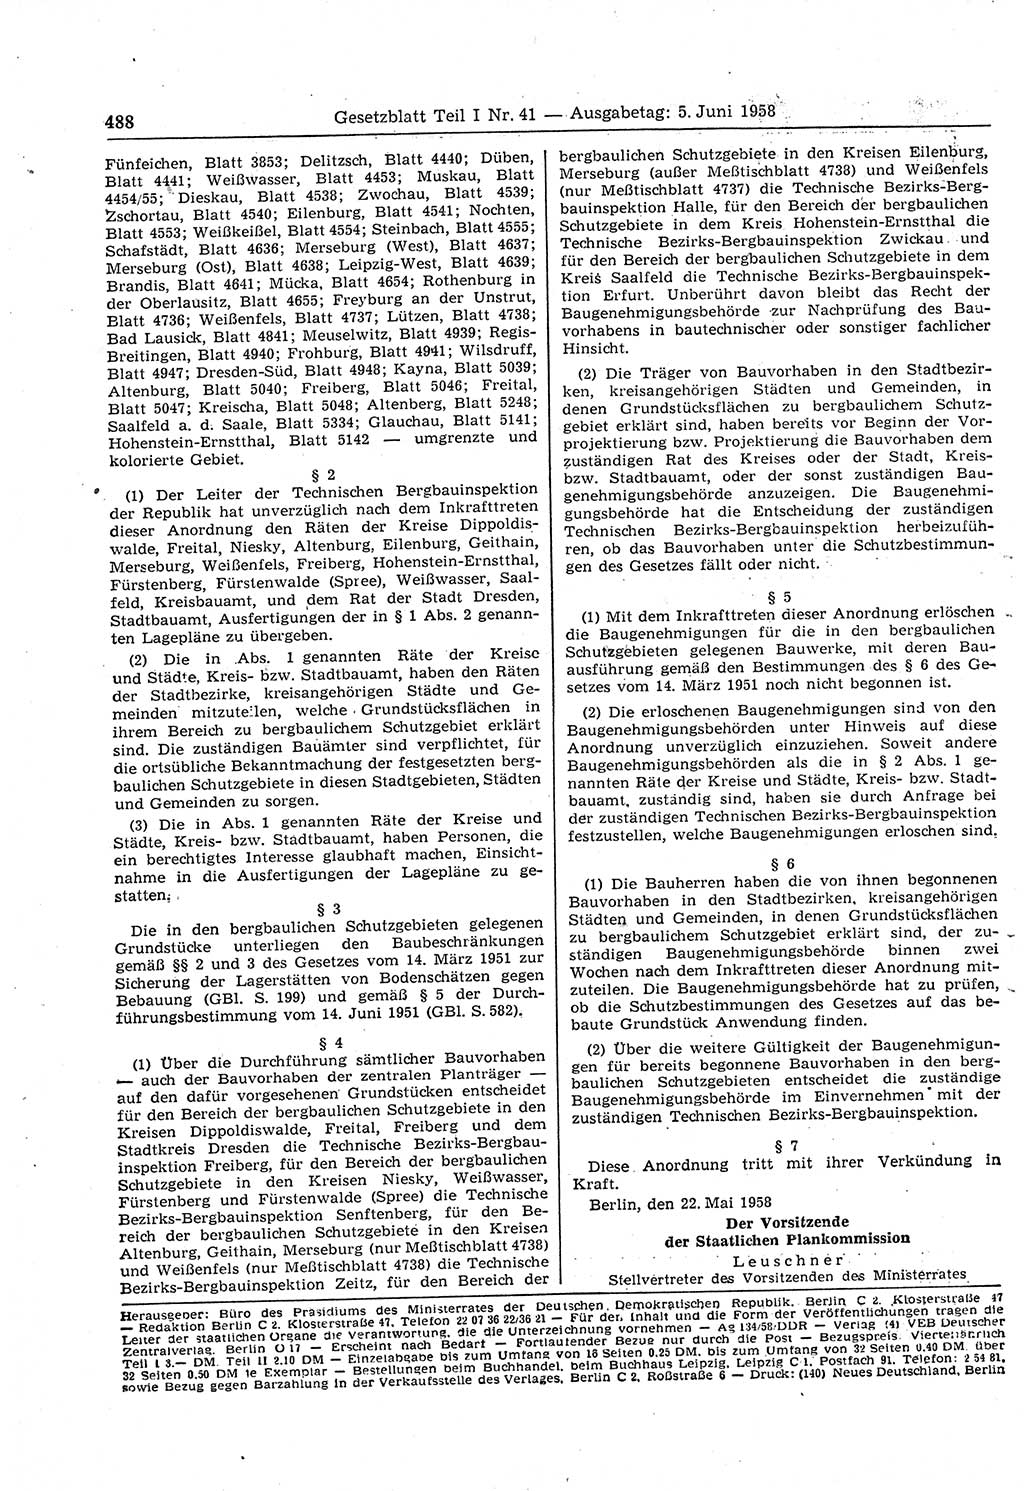 Gesetzblatt (GBl.) der Deutschen Demokratischen Republik (DDR) Teil Ⅰ 1958, Seite 488 (GBl. DDR Ⅰ 1958, S. 488)